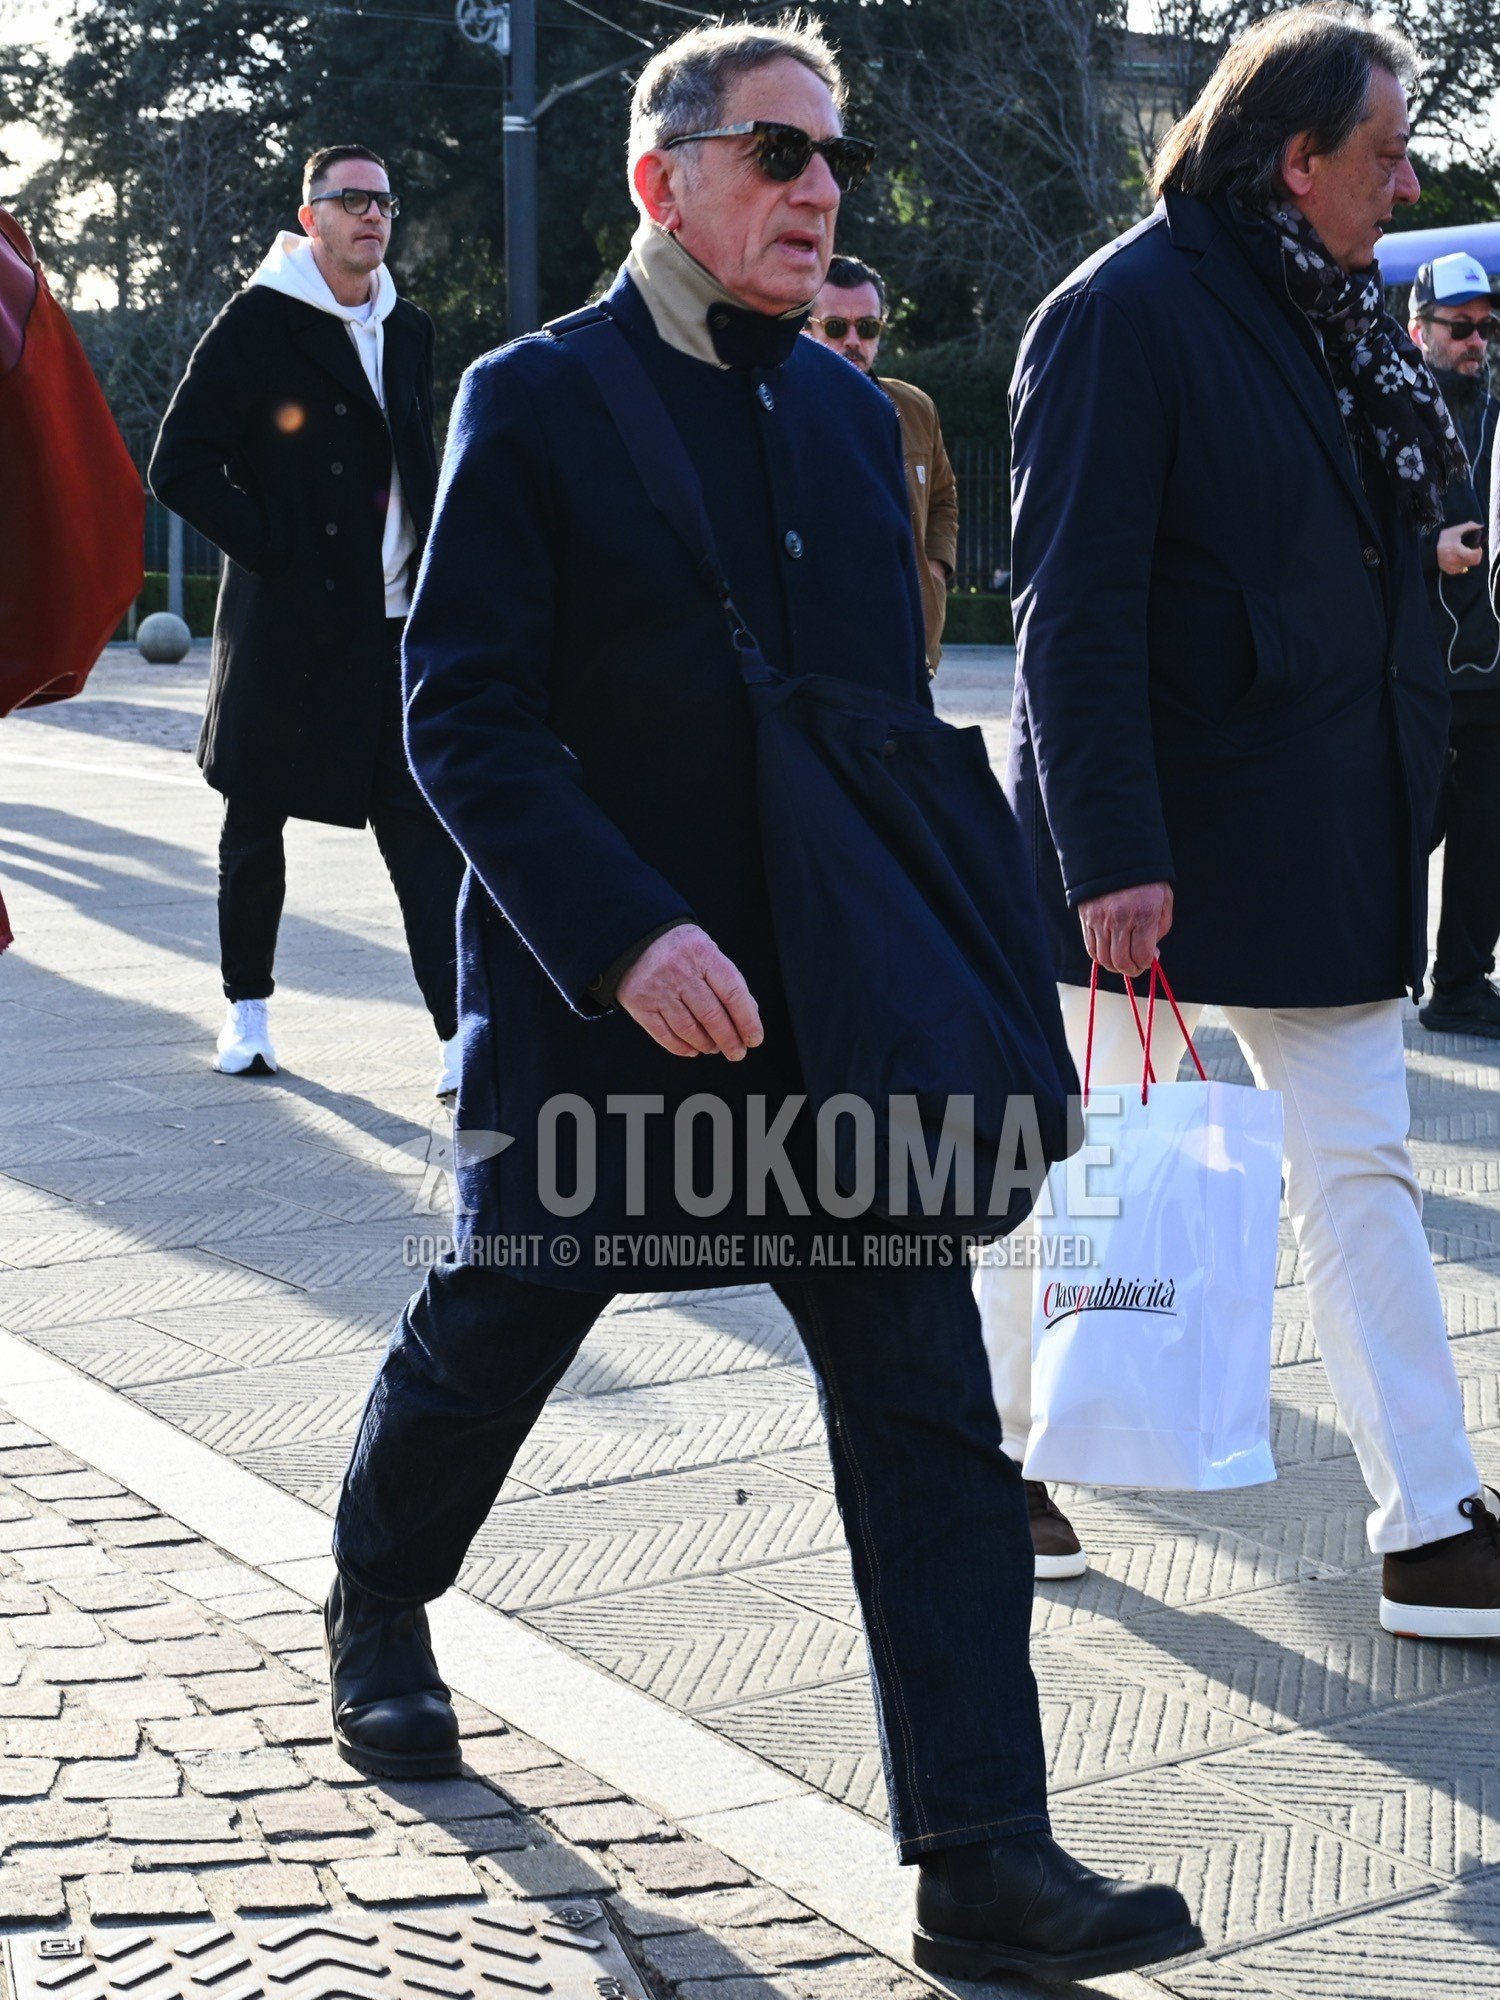 Men's autumn winter outfit with black plain sunglasses, navy plain stenkarrer coat, blue plain denim/jeans, black side-gore boots, navy plain shoulder bag.